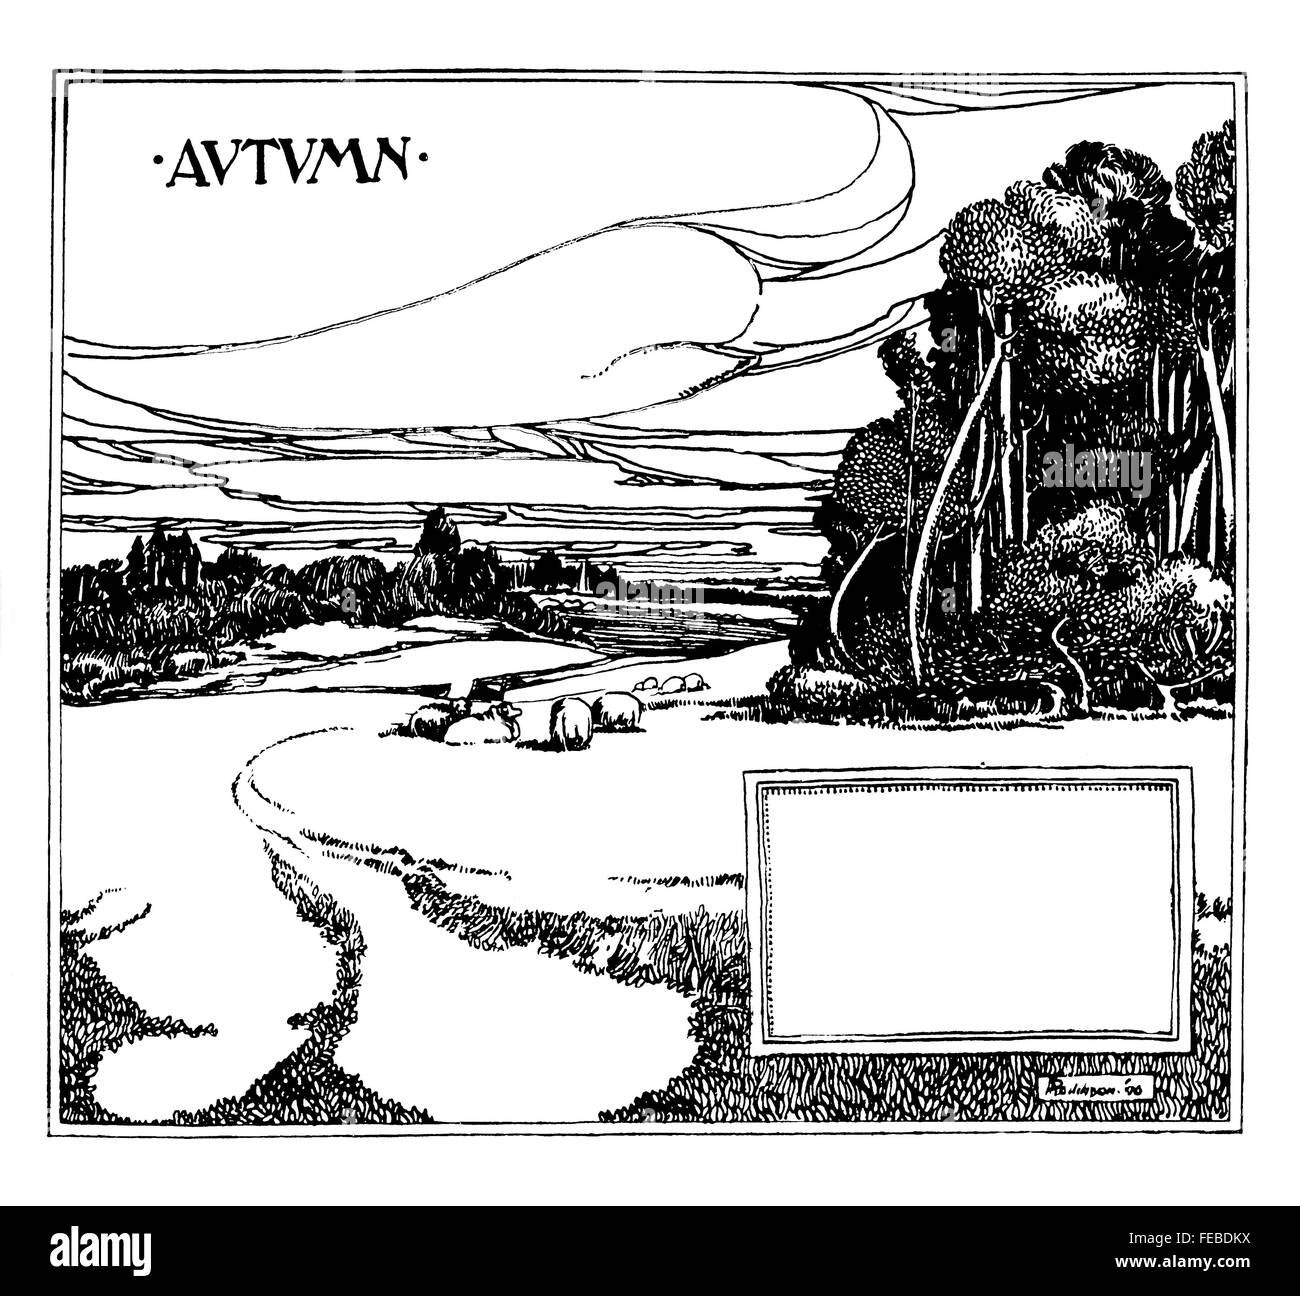 Autunno, stagionali art nouveau illustrazione di linea da Sutherland Rollinson dal 1897 Studio Magazine la concorrenza Foto Stock